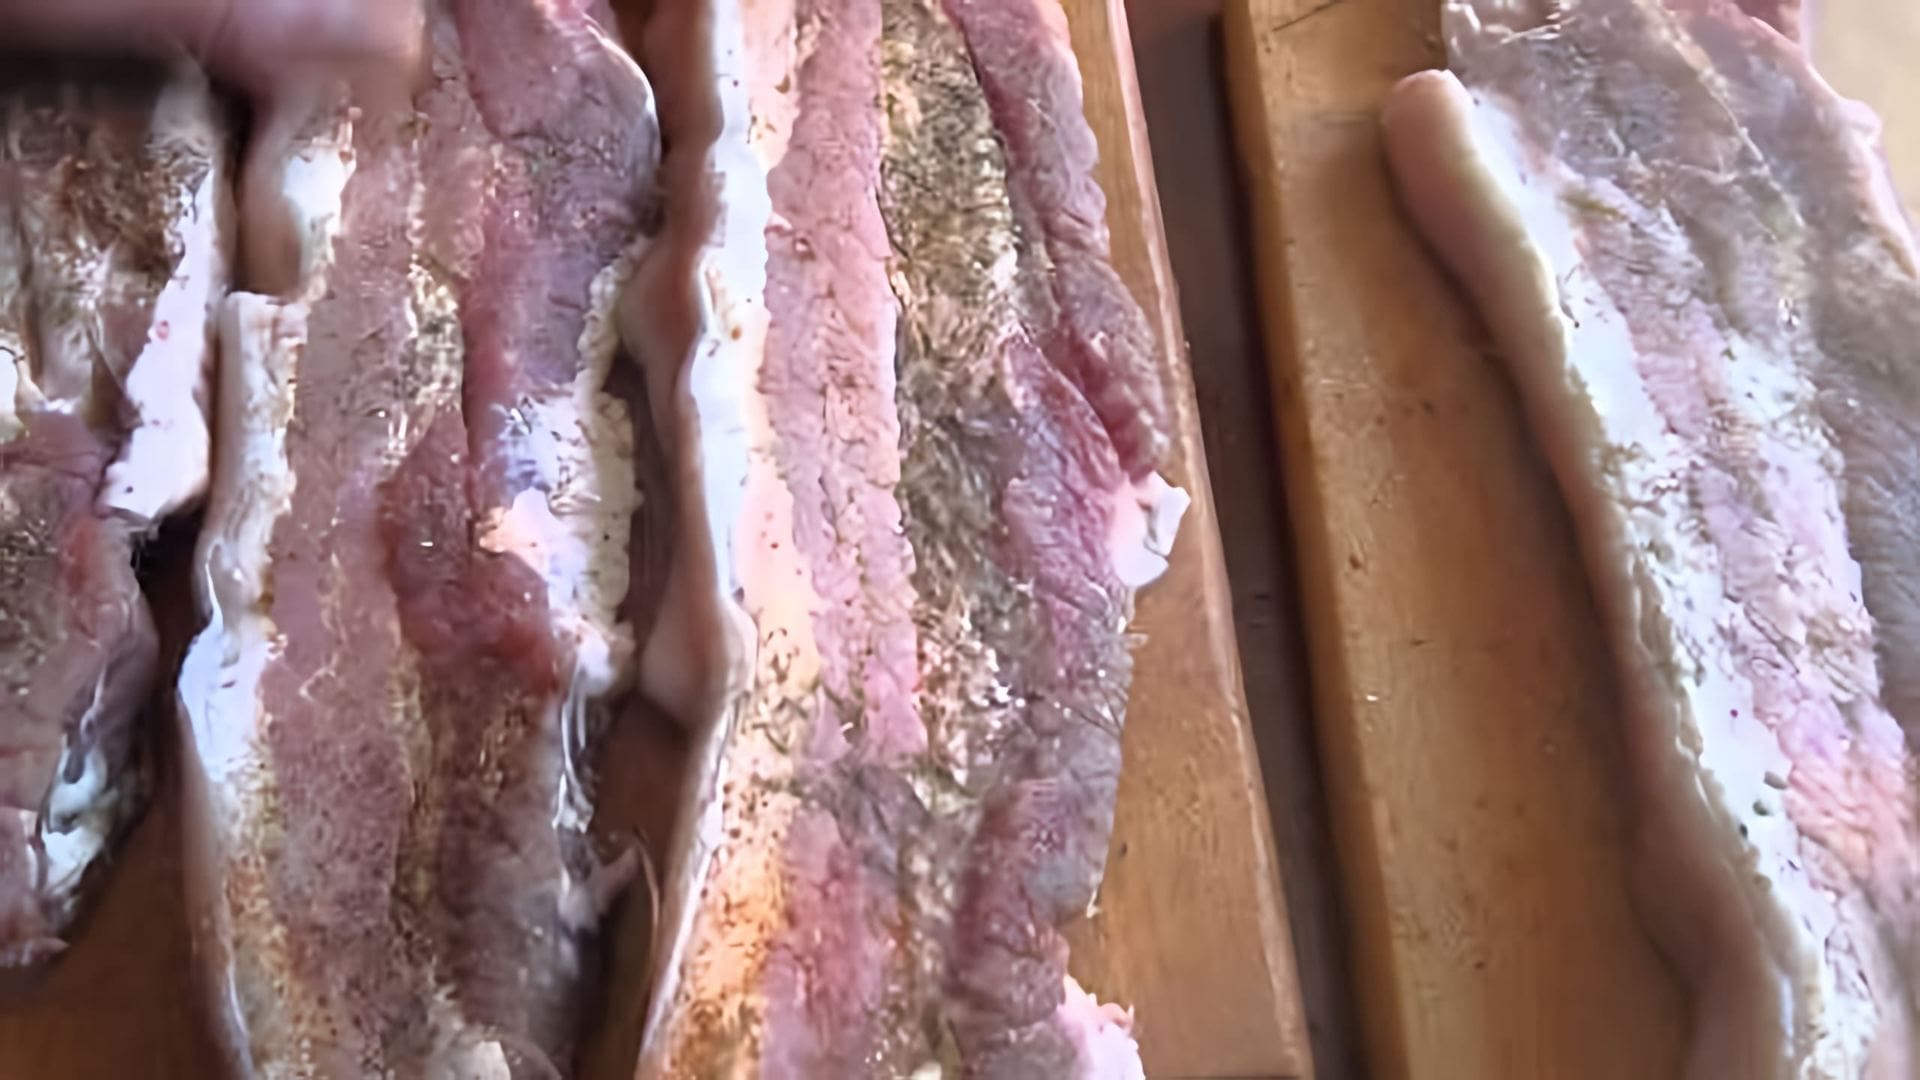 В этом видео демонстрируется процесс приготовления свиной грудинки в домашних условиях